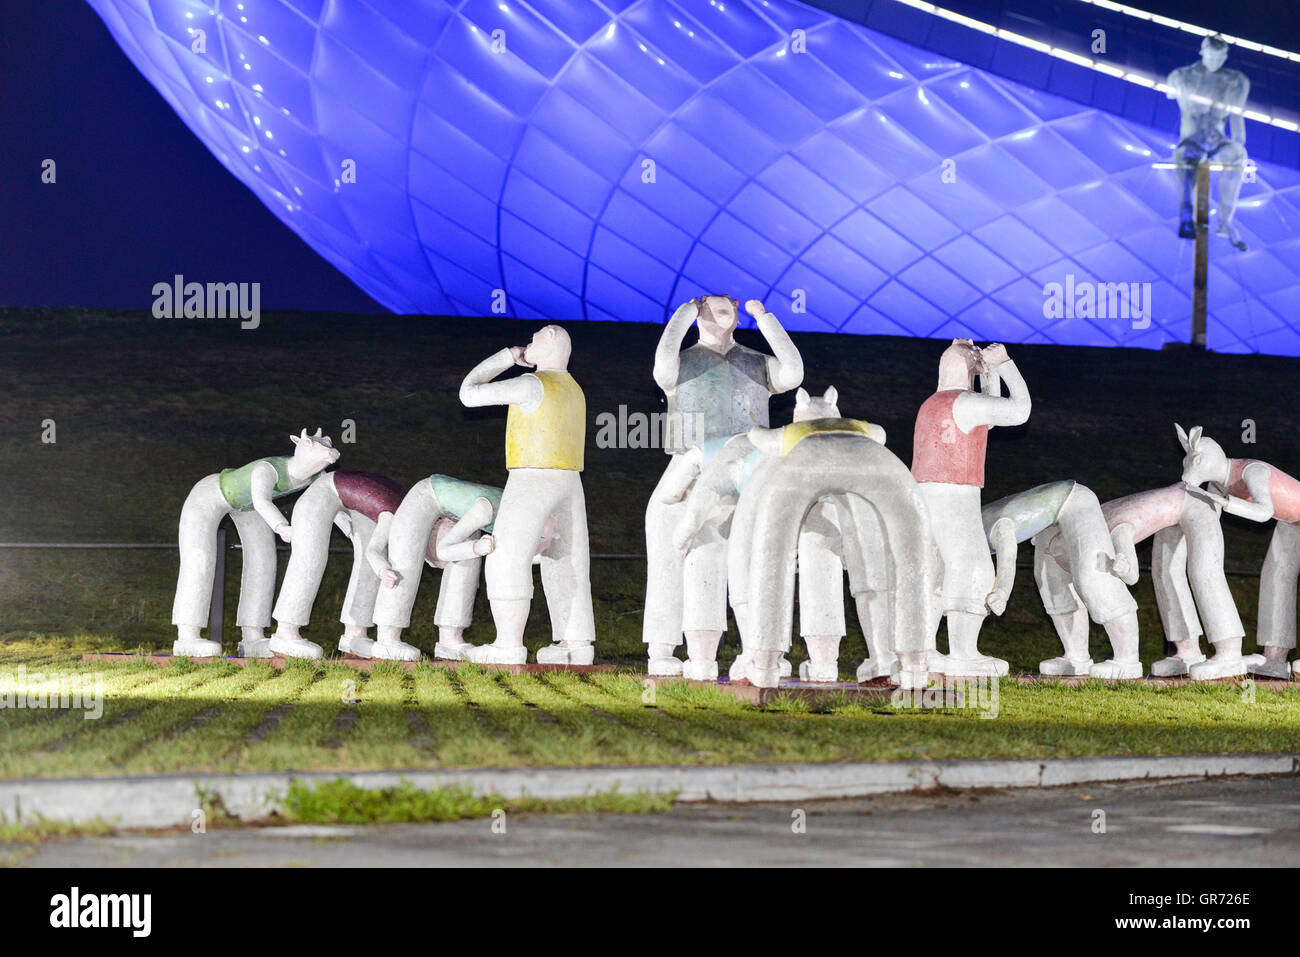 Jeux coréen - Statues dans l'Arc allumé musée d'art moderne -Daegu - La ville colorée ; l'Arc lumineux spécial construire Banque D'Images